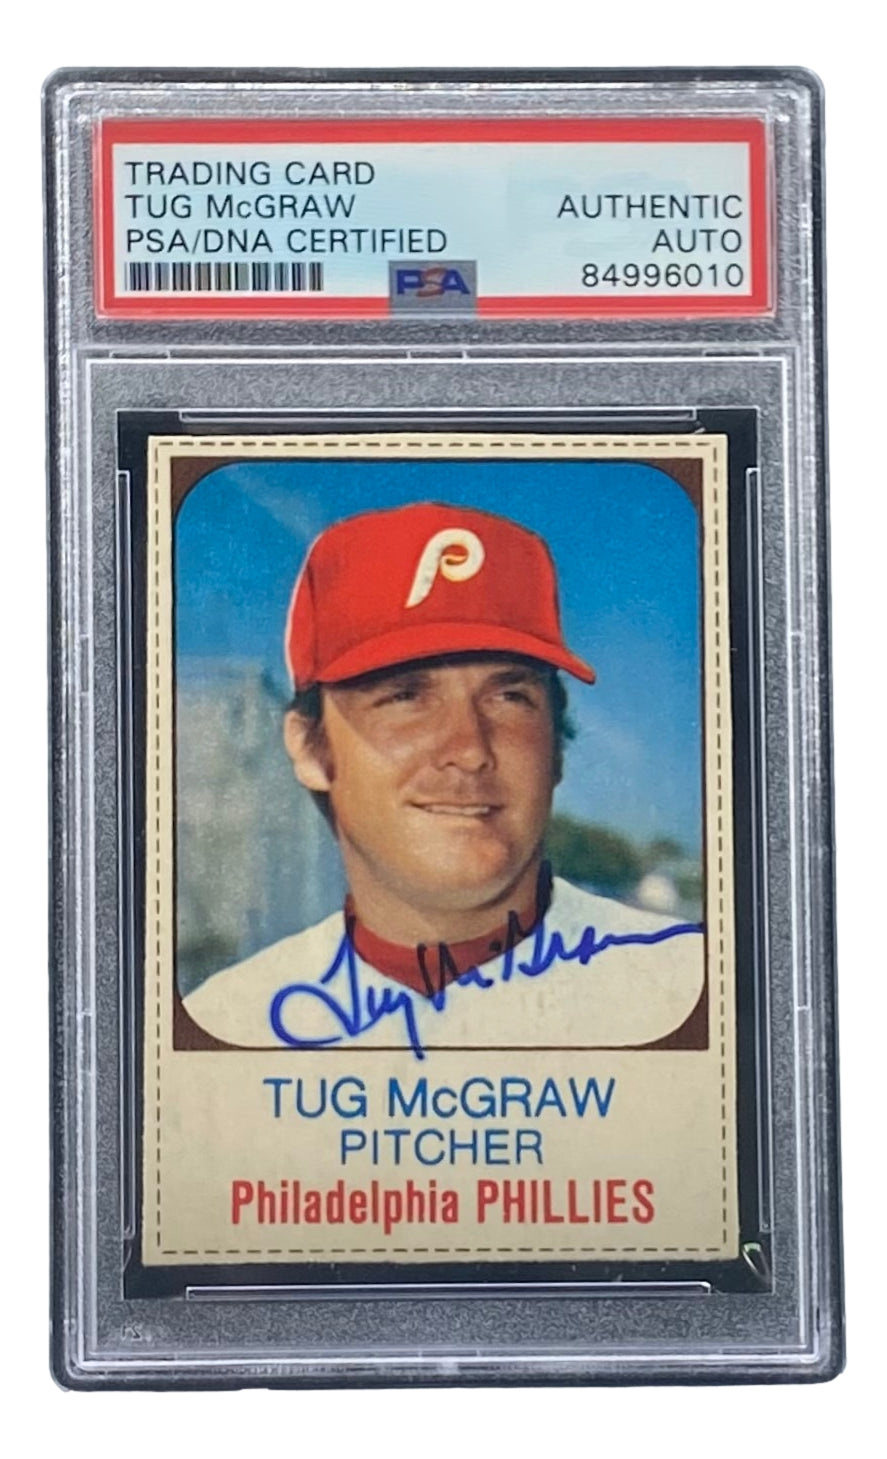 MLB Tug McGraw Signed Photos, Collectible Tug McGraw Signed Photos